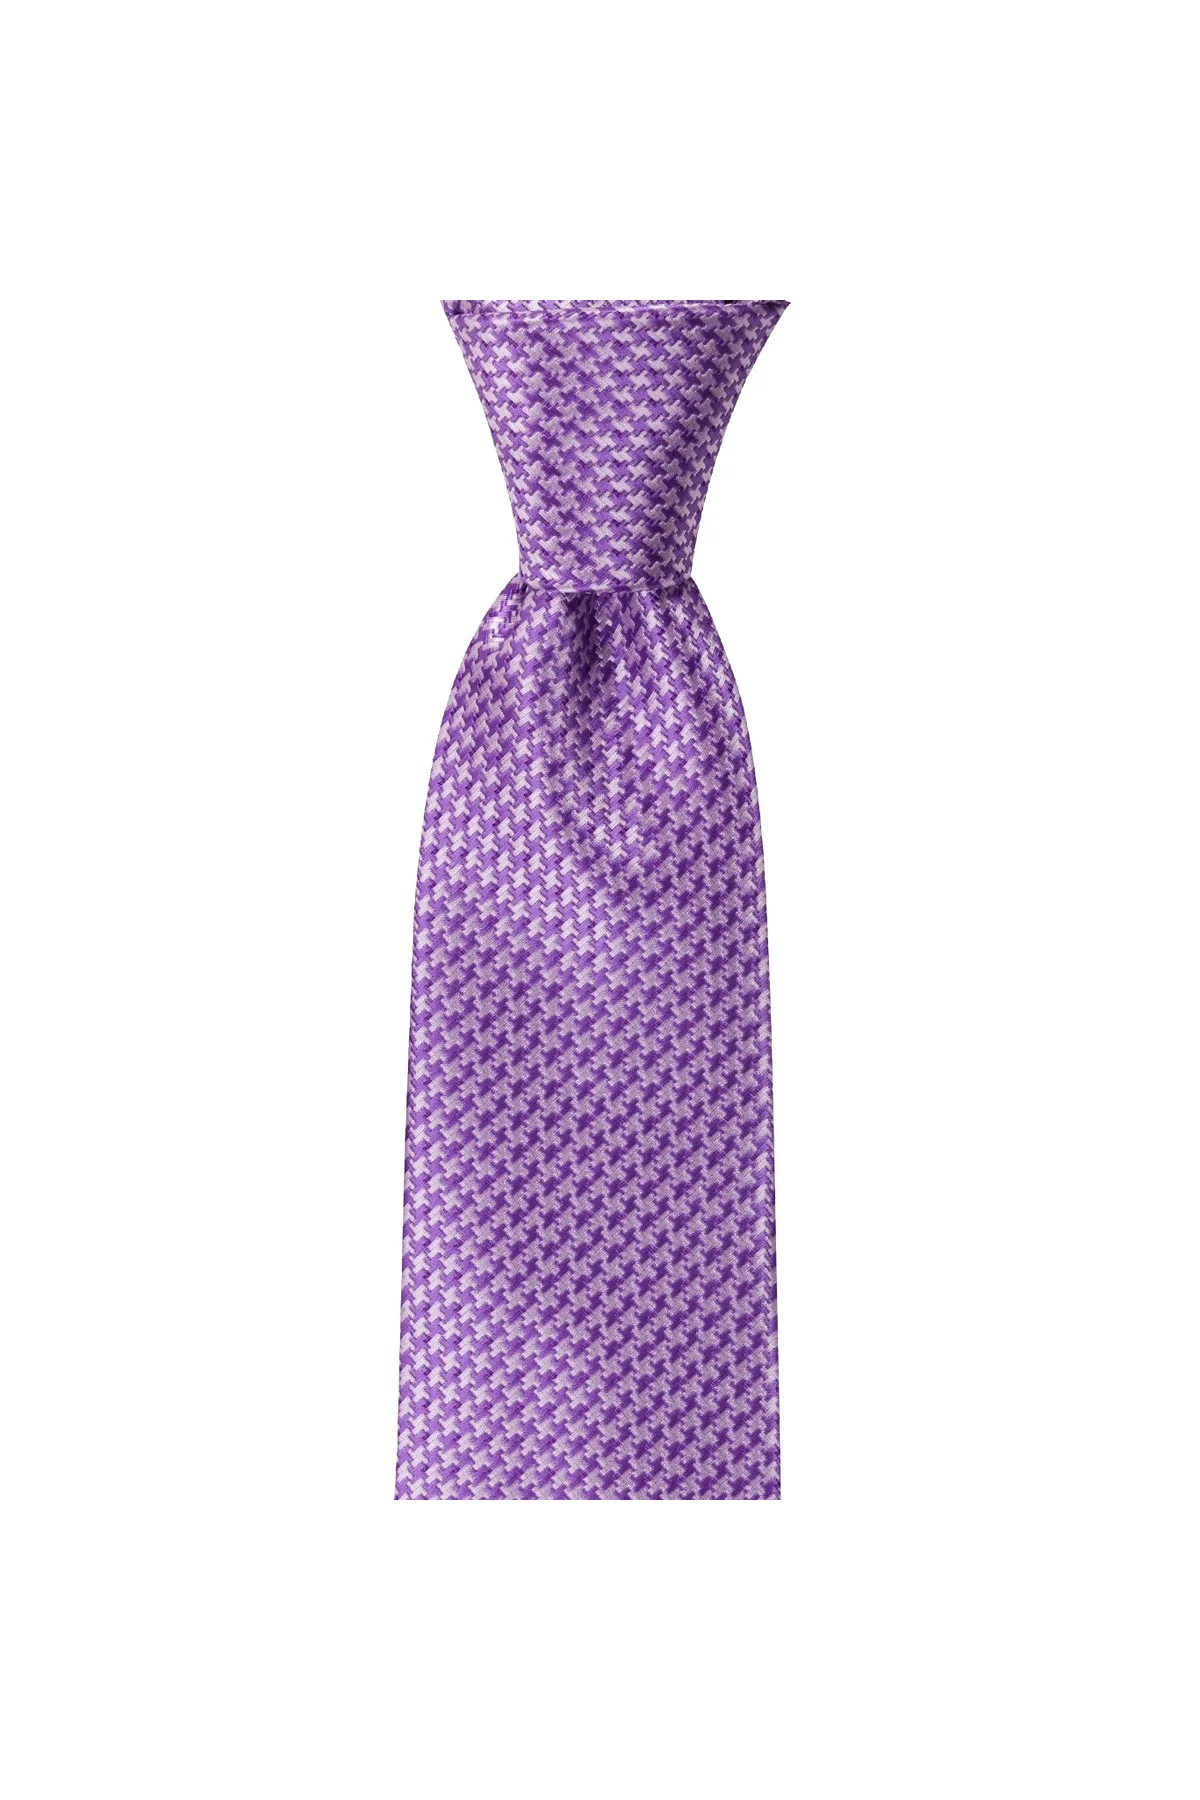 Мужской галстук классического дизайна, Сделано в Италии, ширина 8 см, длина 145 см, отличный наряд, классические мужские костюмы